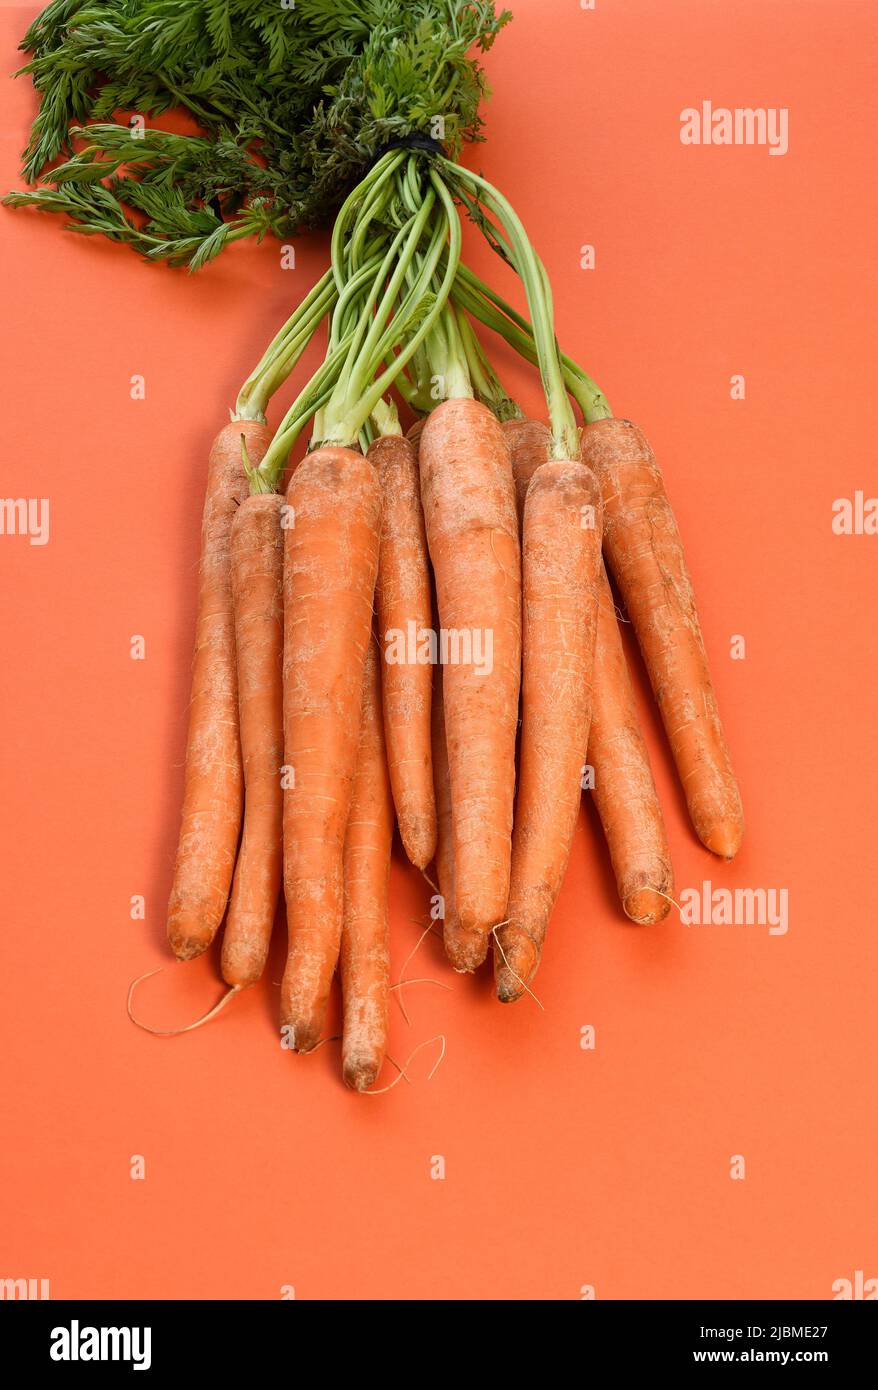 Un mazzo di carote fresche con gambi verdi Foto Stock